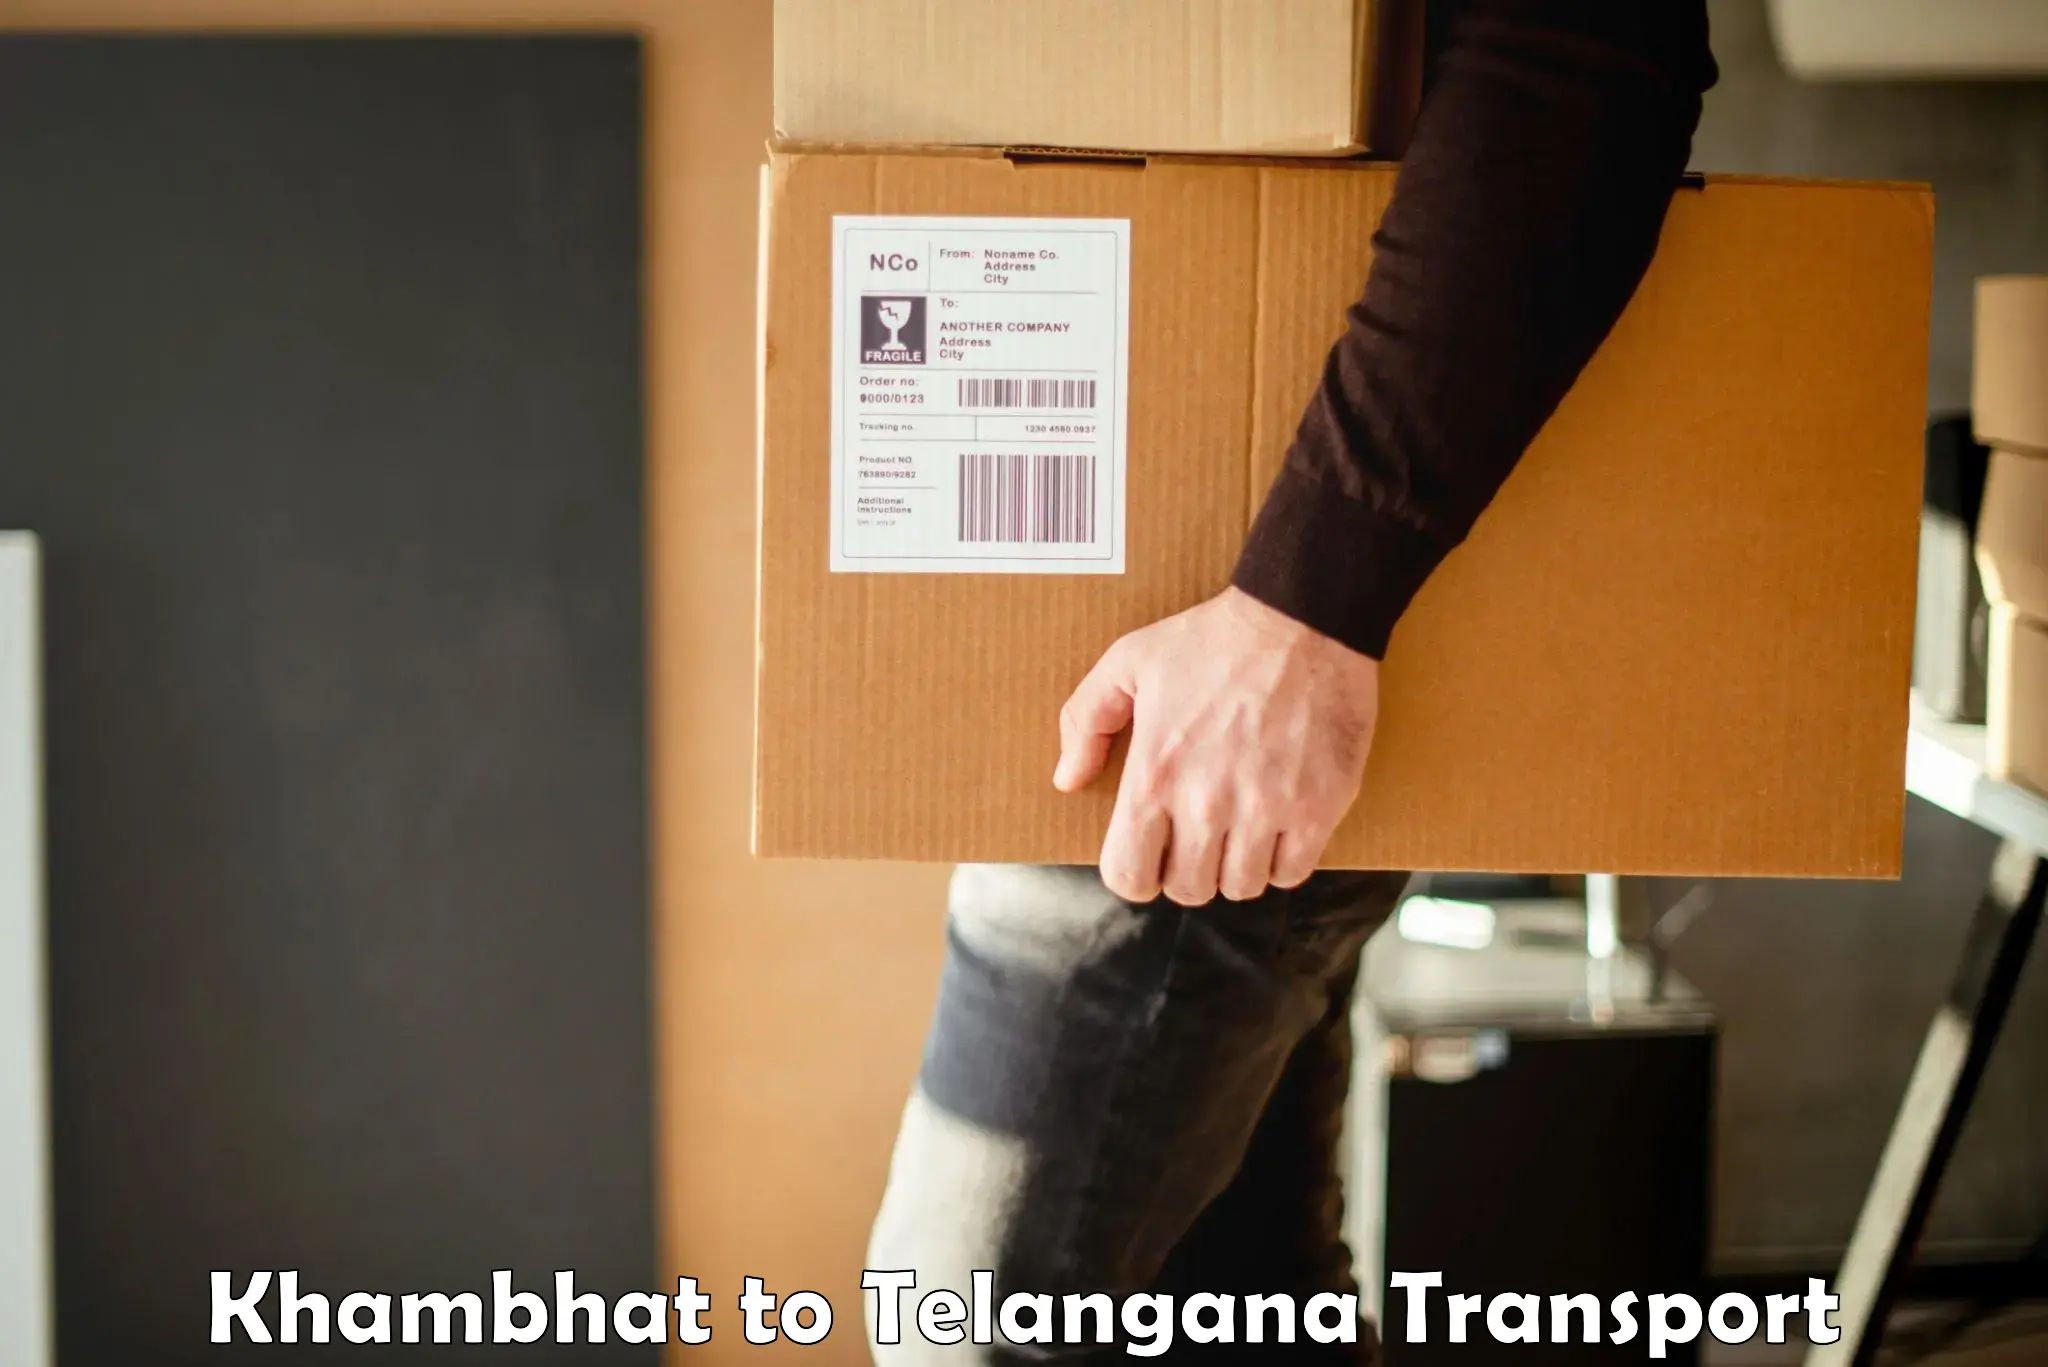 Pick up transport service Khambhat to Mogulla Pally